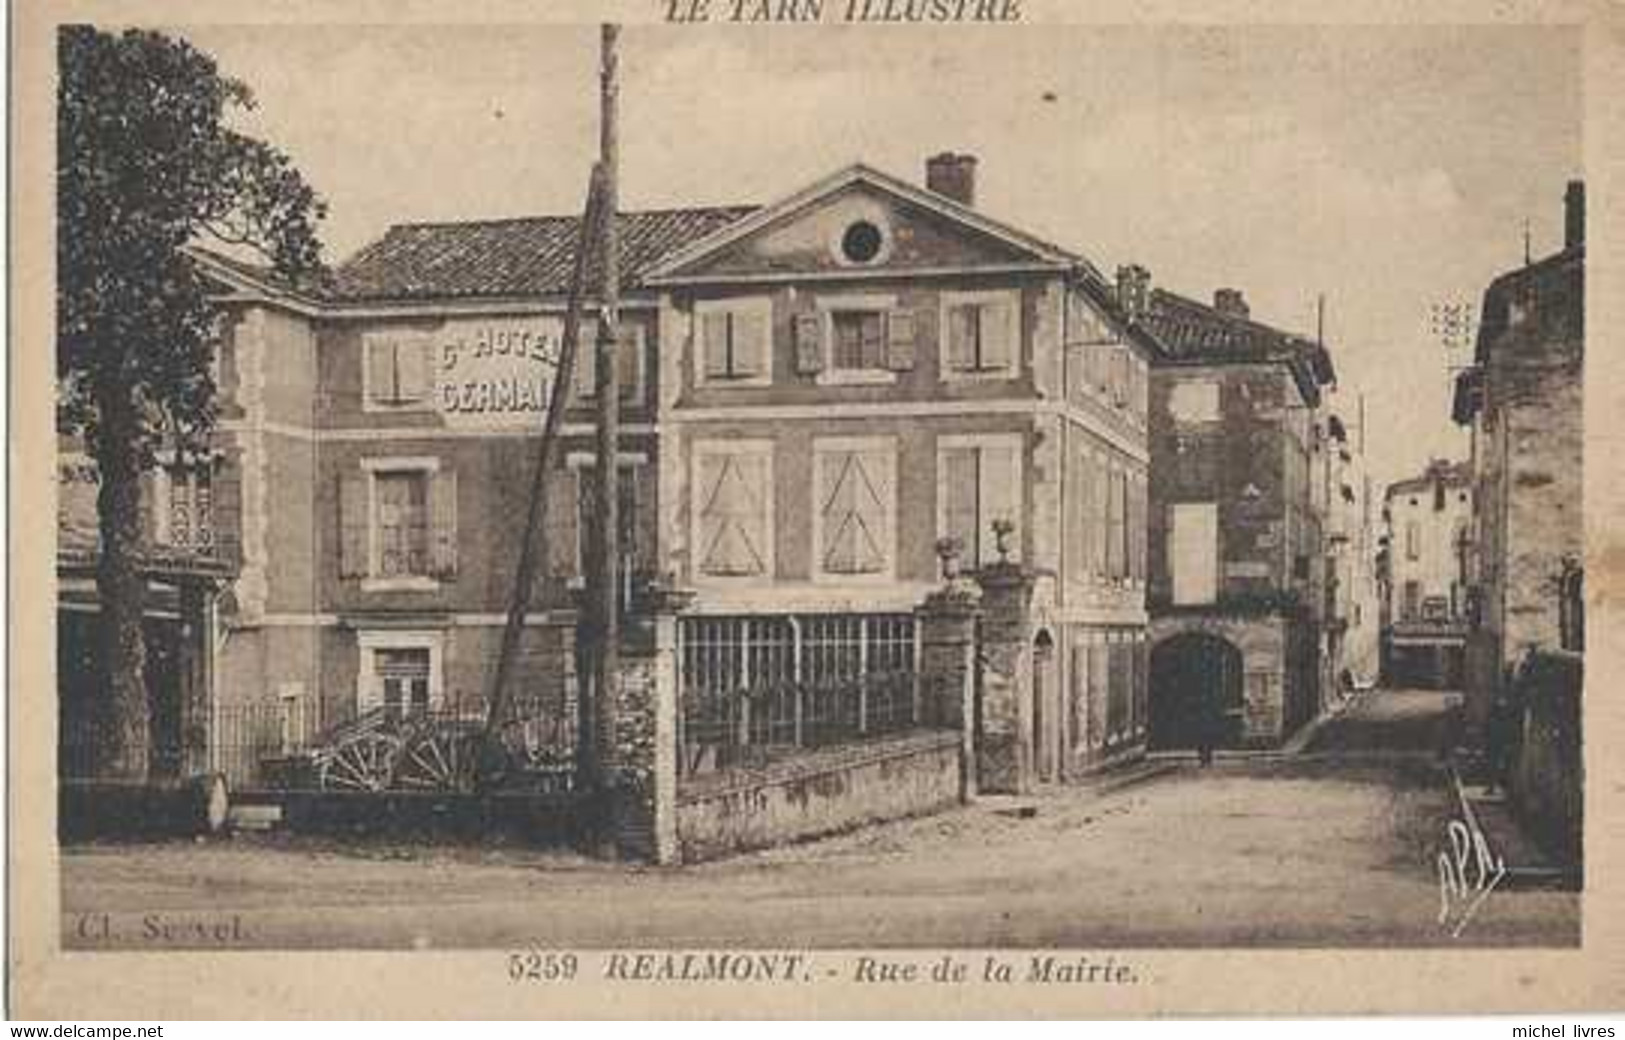 81 - Le Tarn Illustré - 5259 - Realmont - Rue De La Mairie - Grand Hôtel Germain - Circulé En 1940 - Sépia - TBE - Realmont